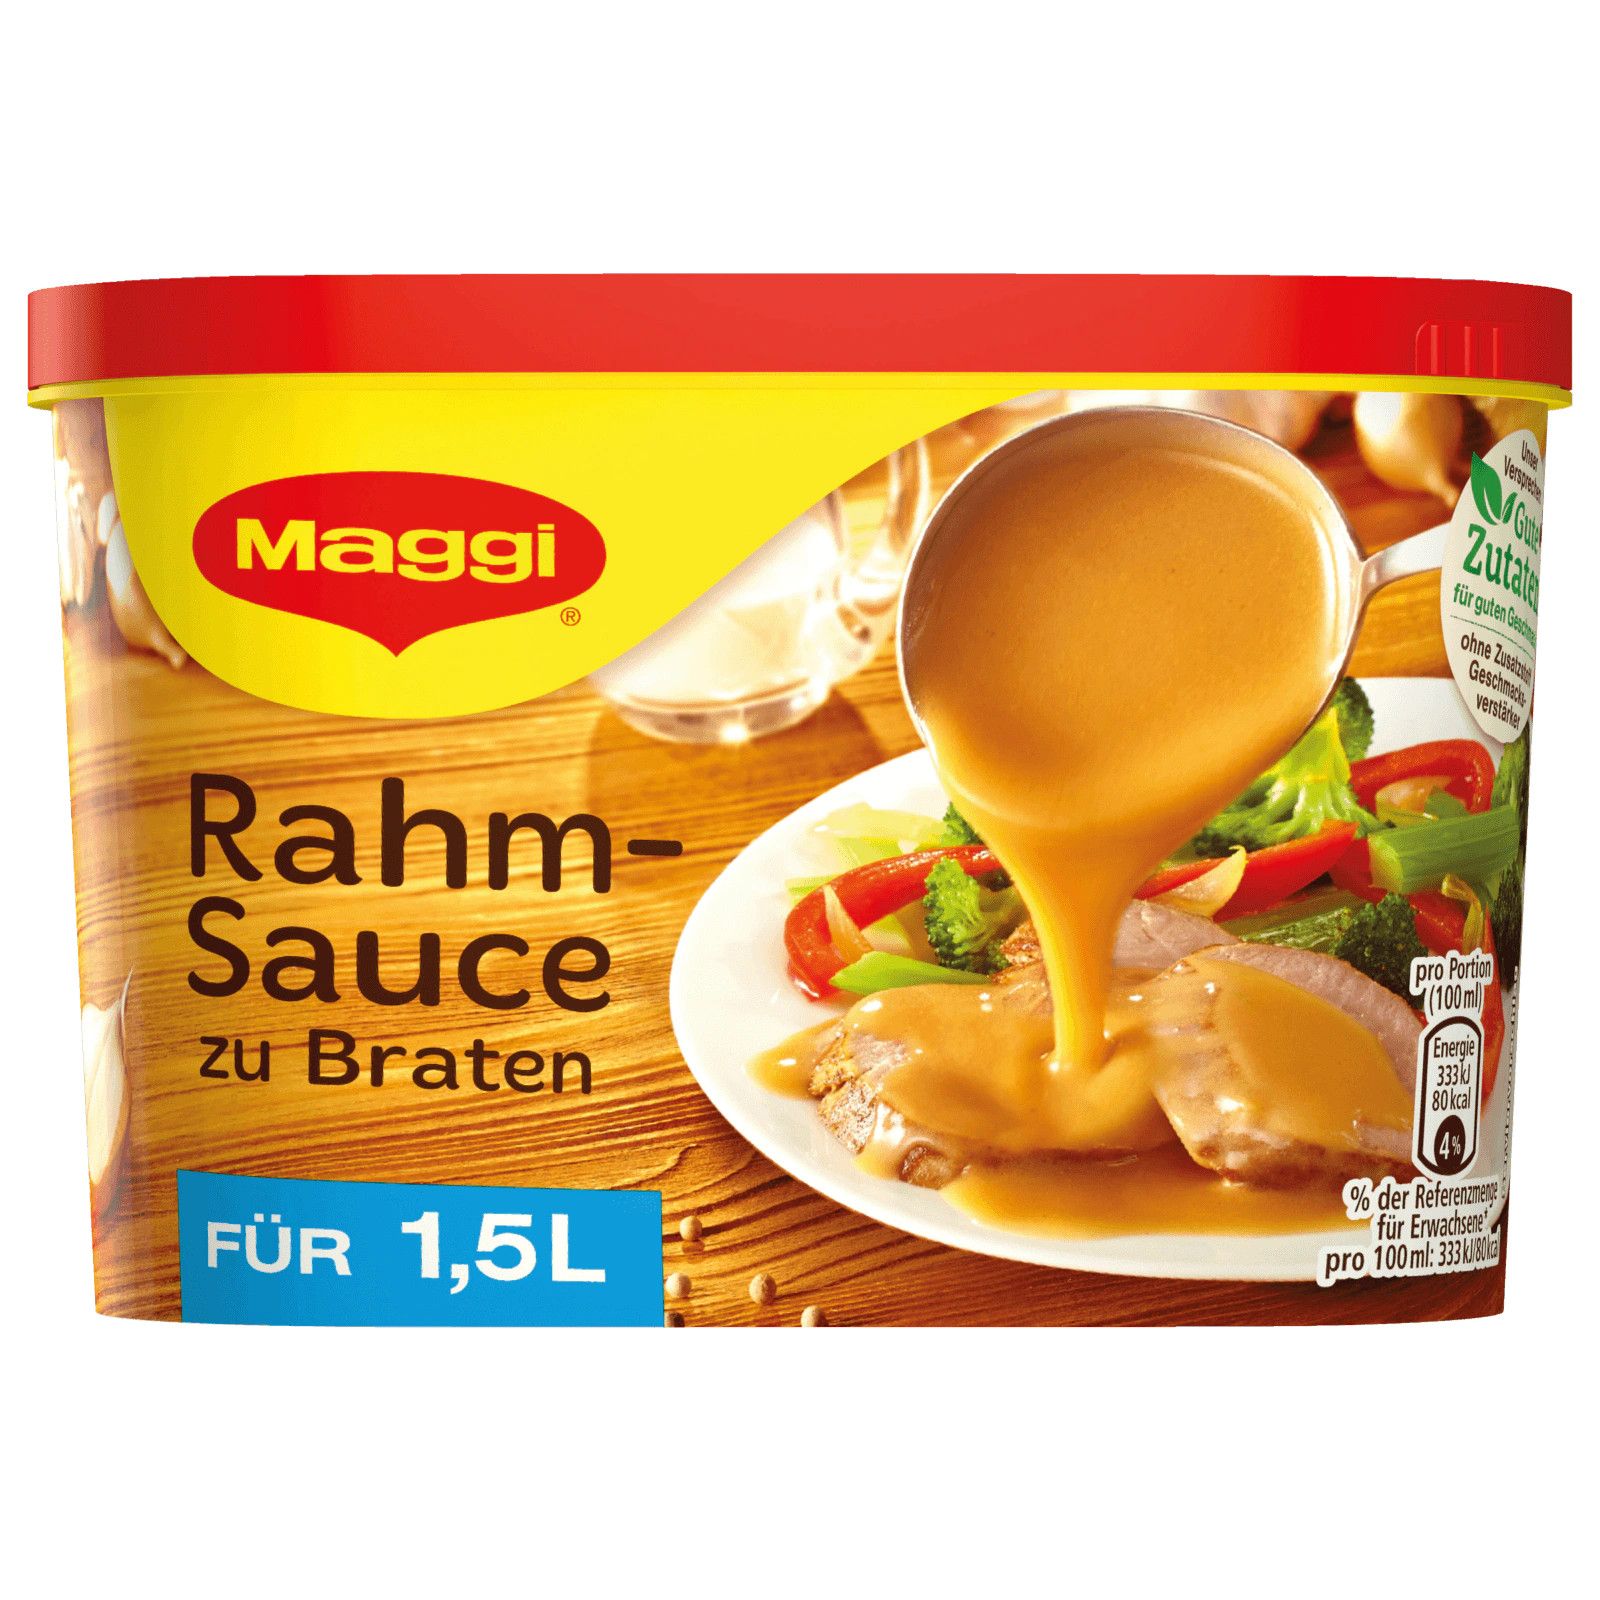  Maggi Rahm-Sauce zu Braten für 1,5l - Bột sốt nâu cho các món chiên rán 